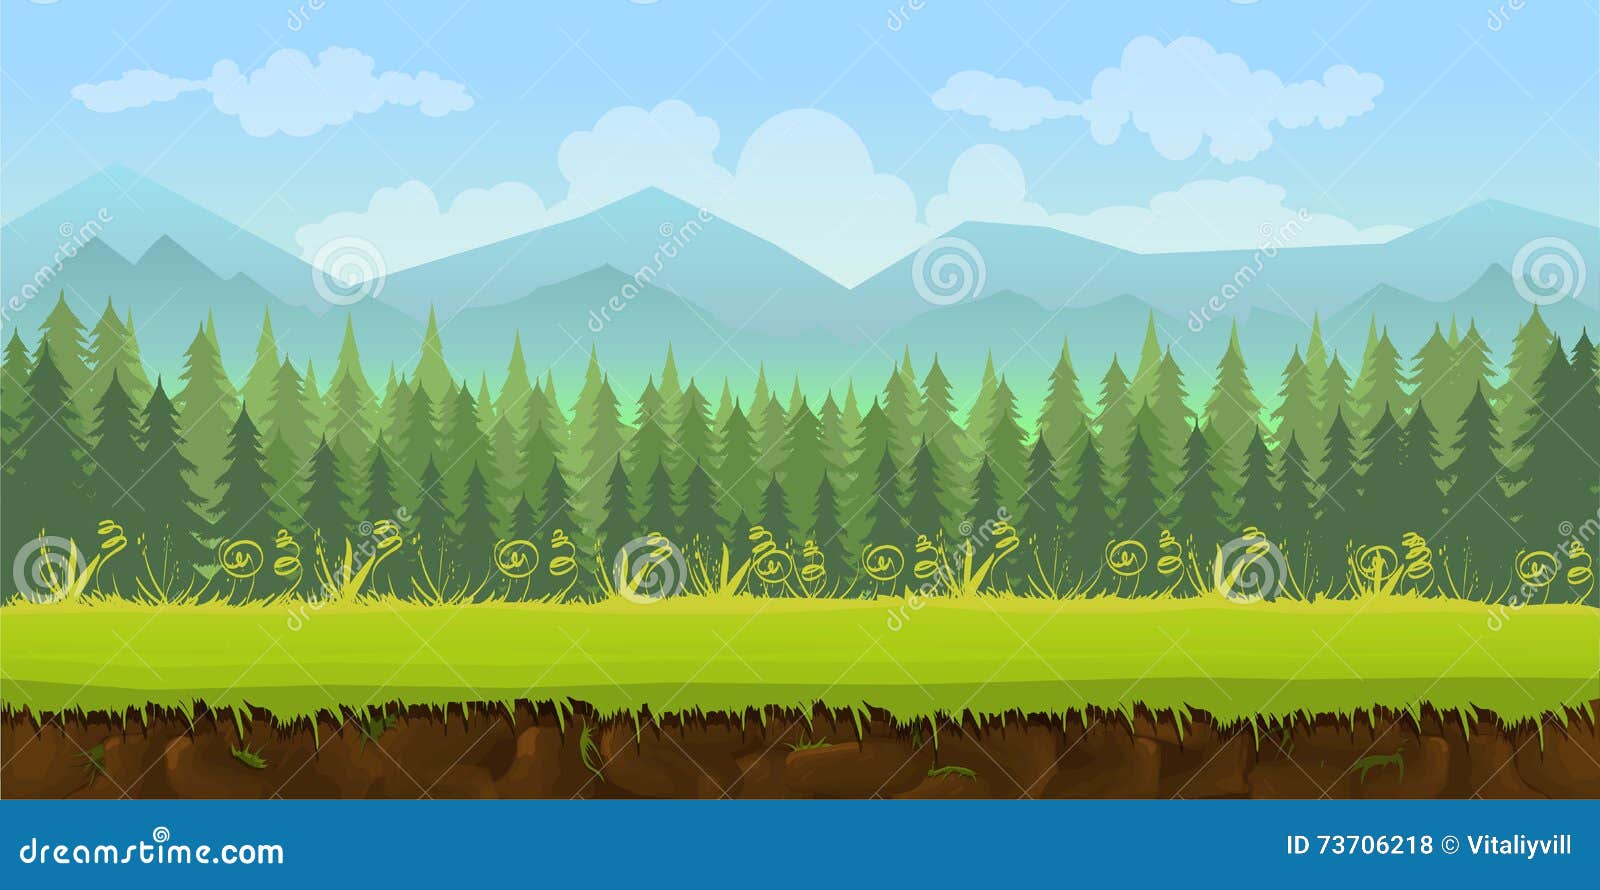 Nếu bạn đang phát triển một game 2D với chủ đề rừng, hãy tham khảo hình liên quan để tìm kiếm một nền game đẹp và hài hòa với chủ đề của bạn.